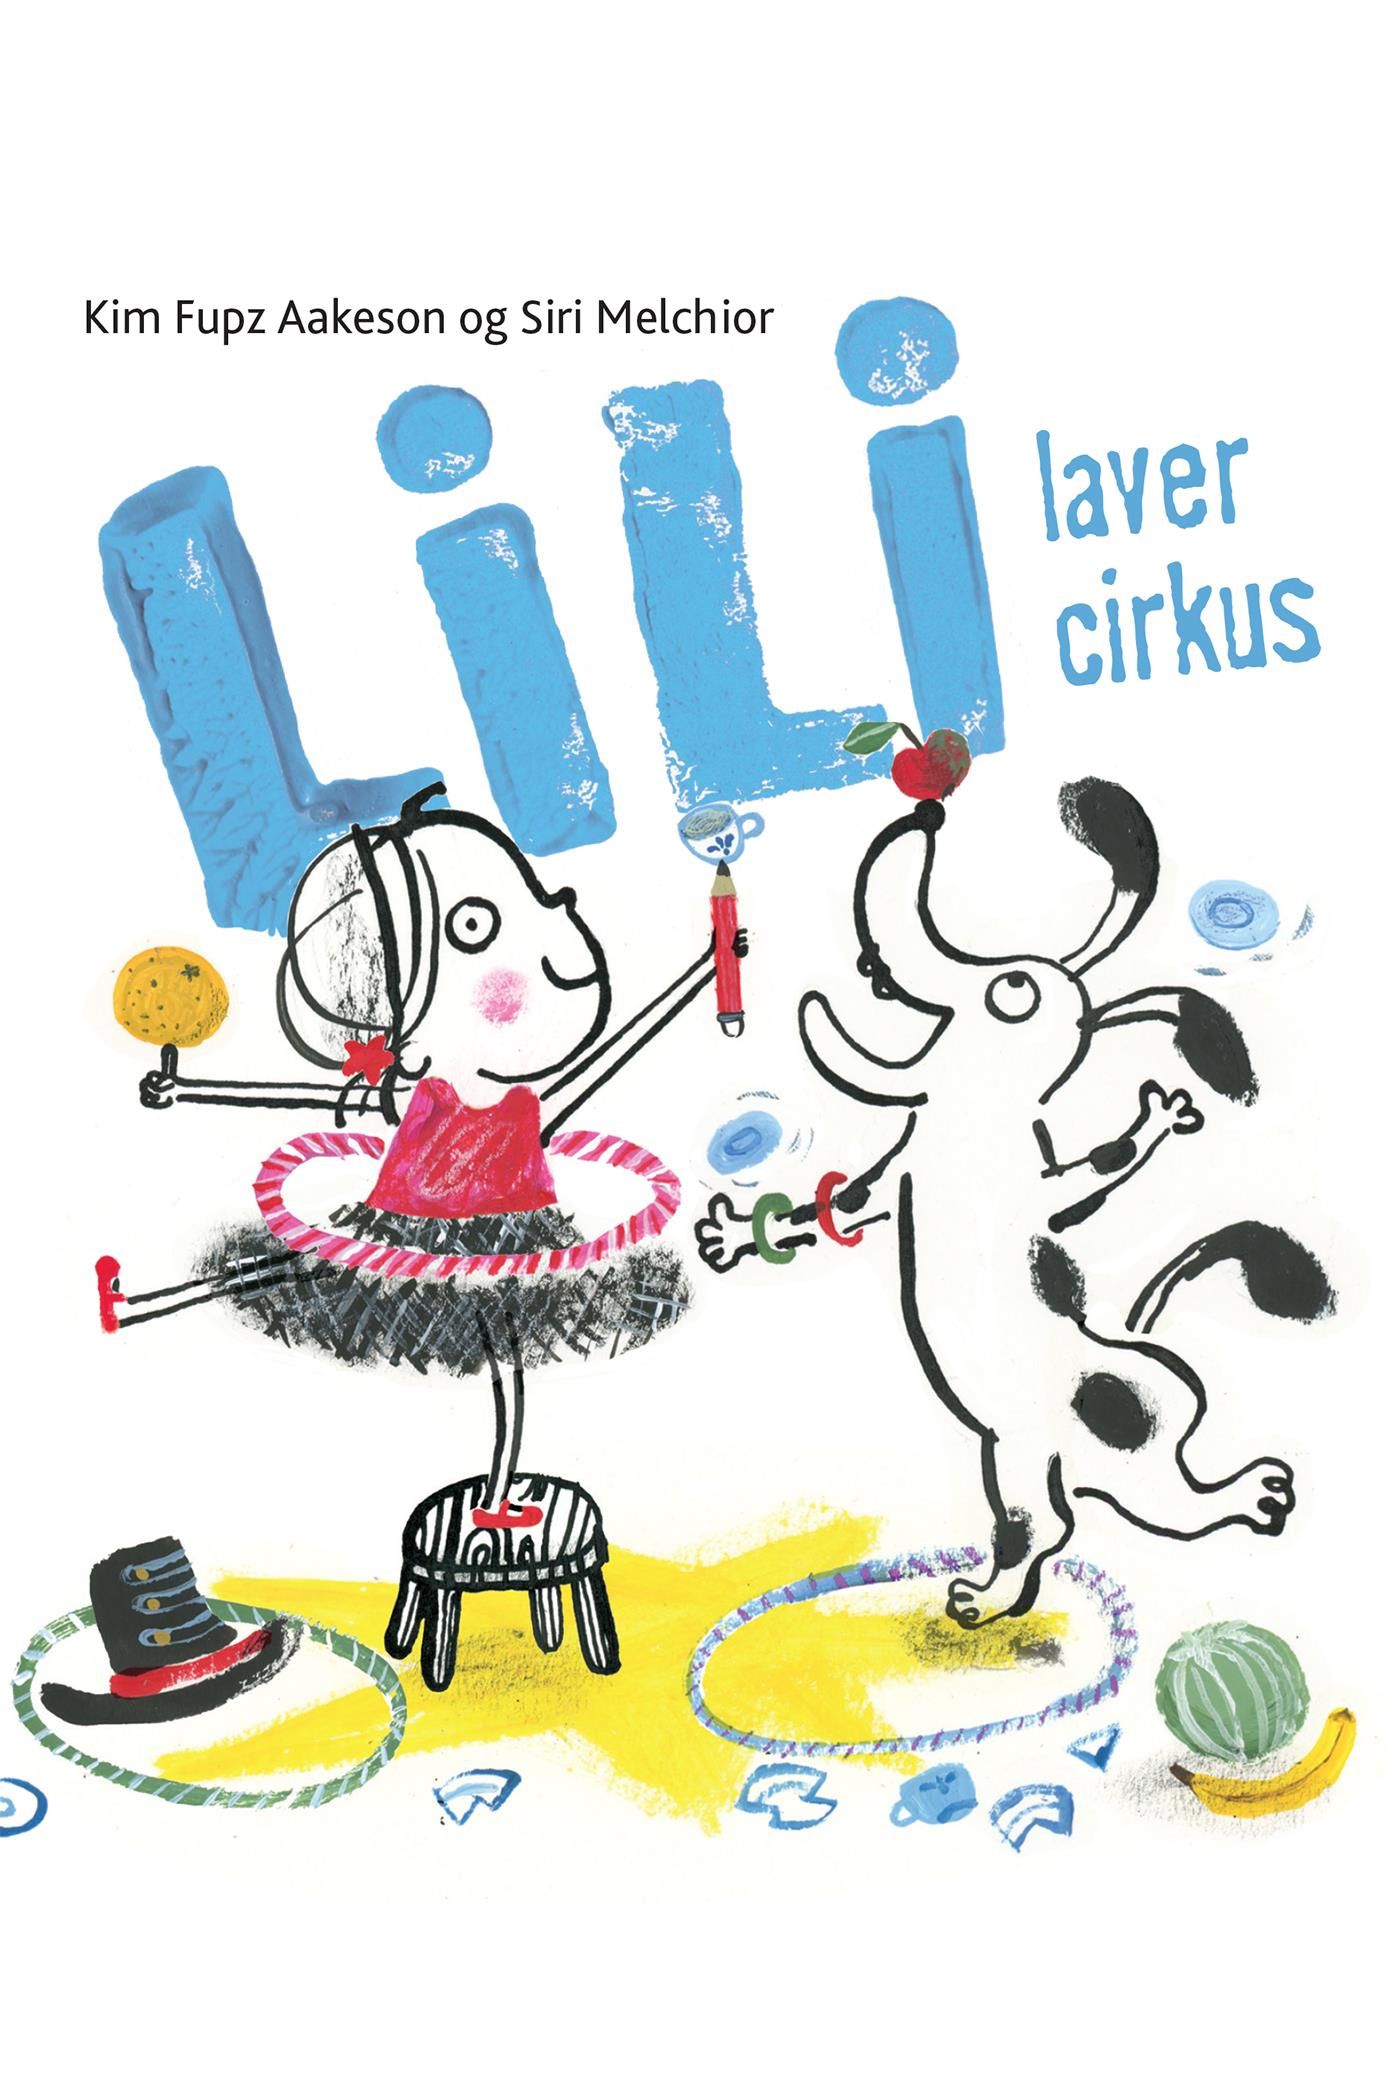 Lili laver cirkus - Lyt& Læs, eBook by Siri Melchior, Kim Fupz Aakeson